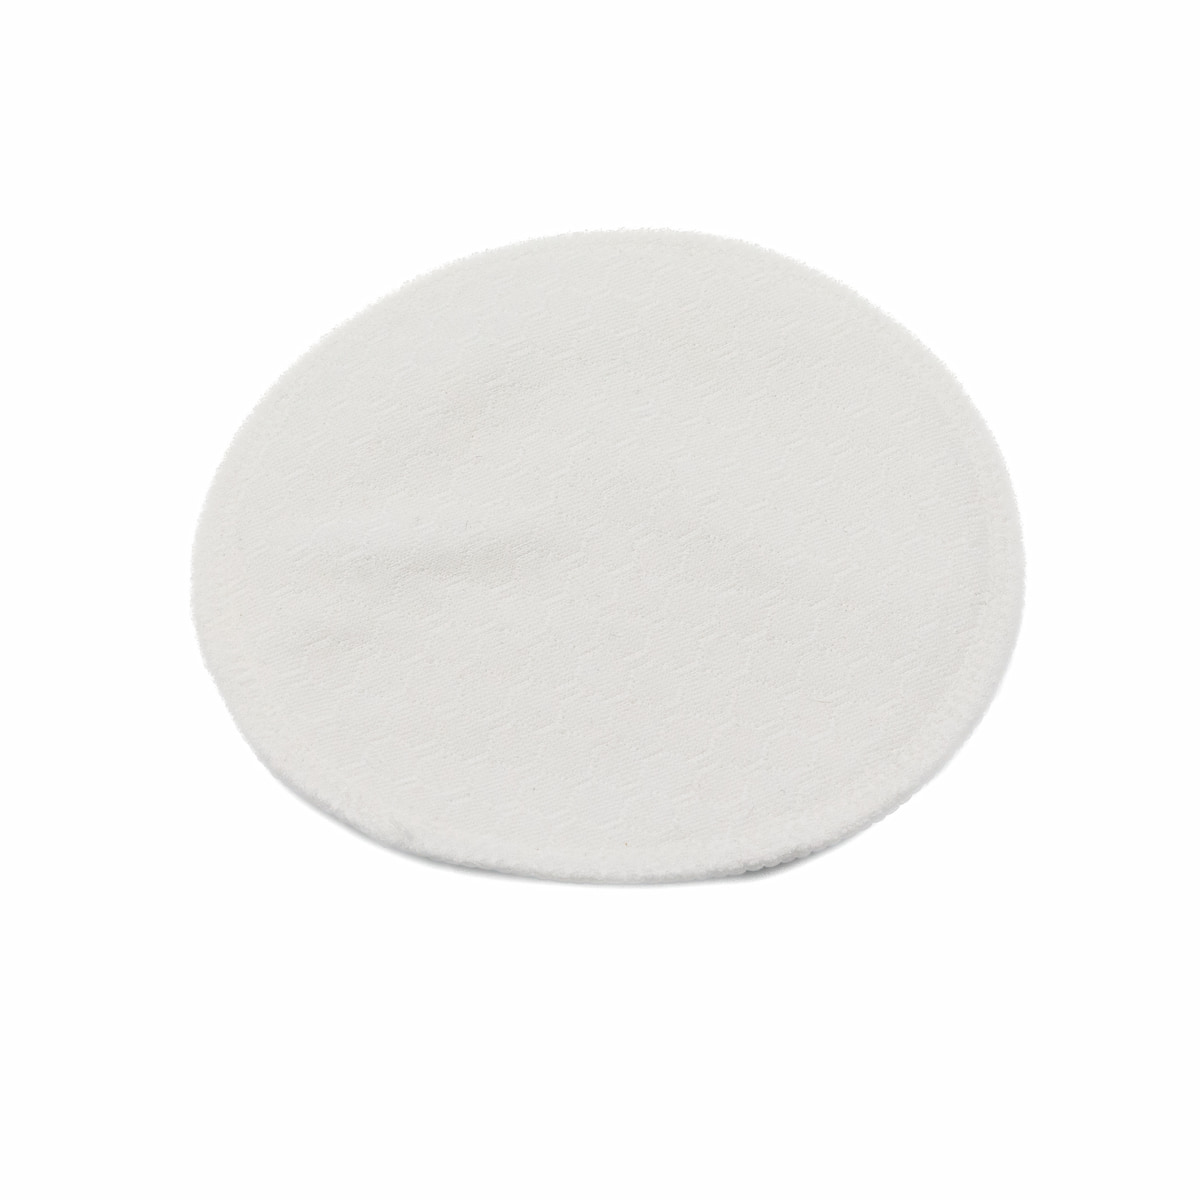 Lactancia – tagged Discos absorbentes reutilizables – Tortuguita